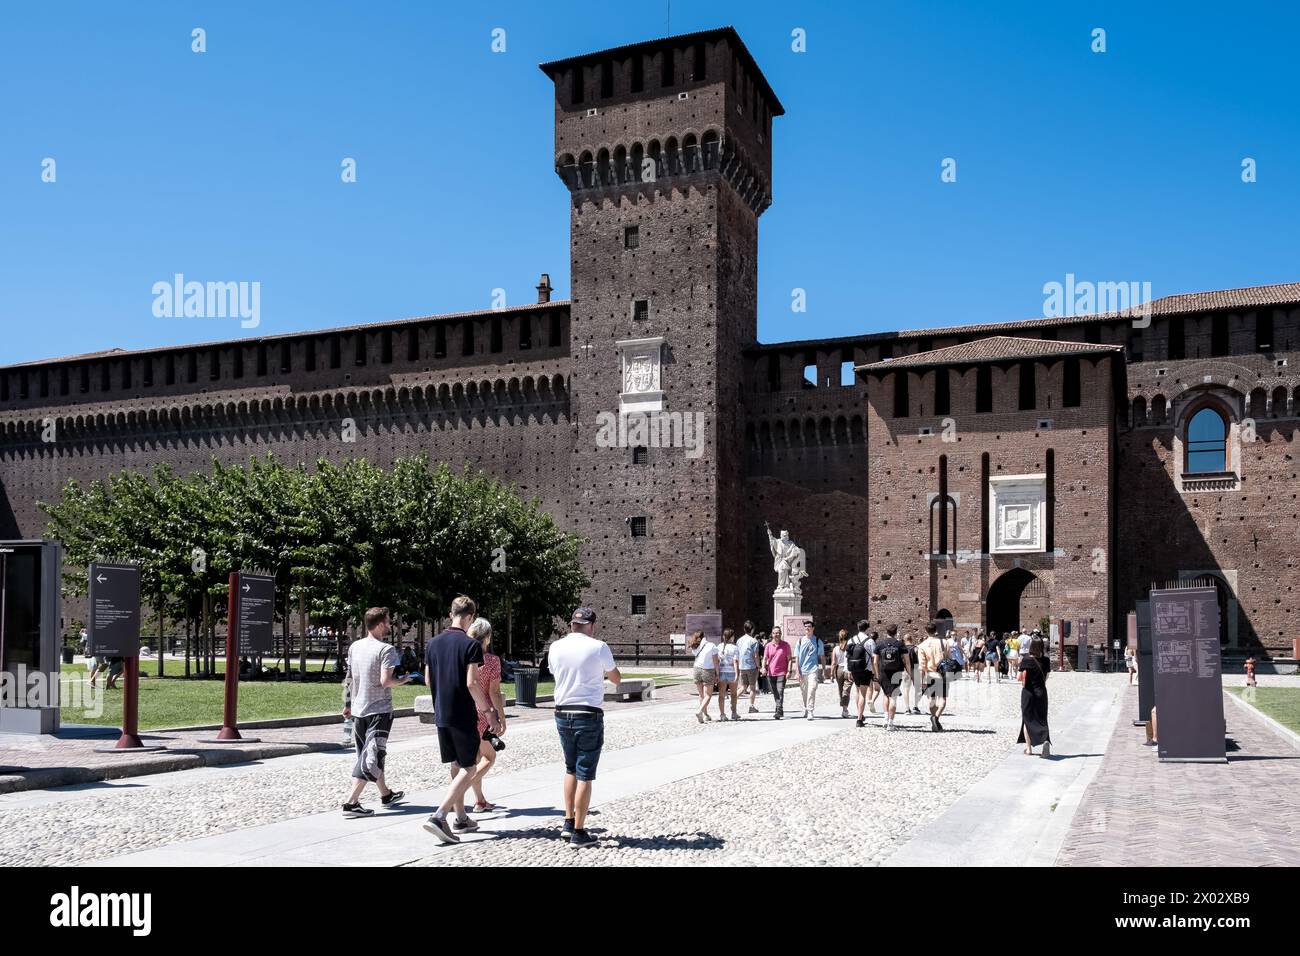 Veduta del Castello Sforzesco, una fortificazione medievale risalente al XV secolo che oggi ospita musei e collezioni d'arte, Milano Foto Stock